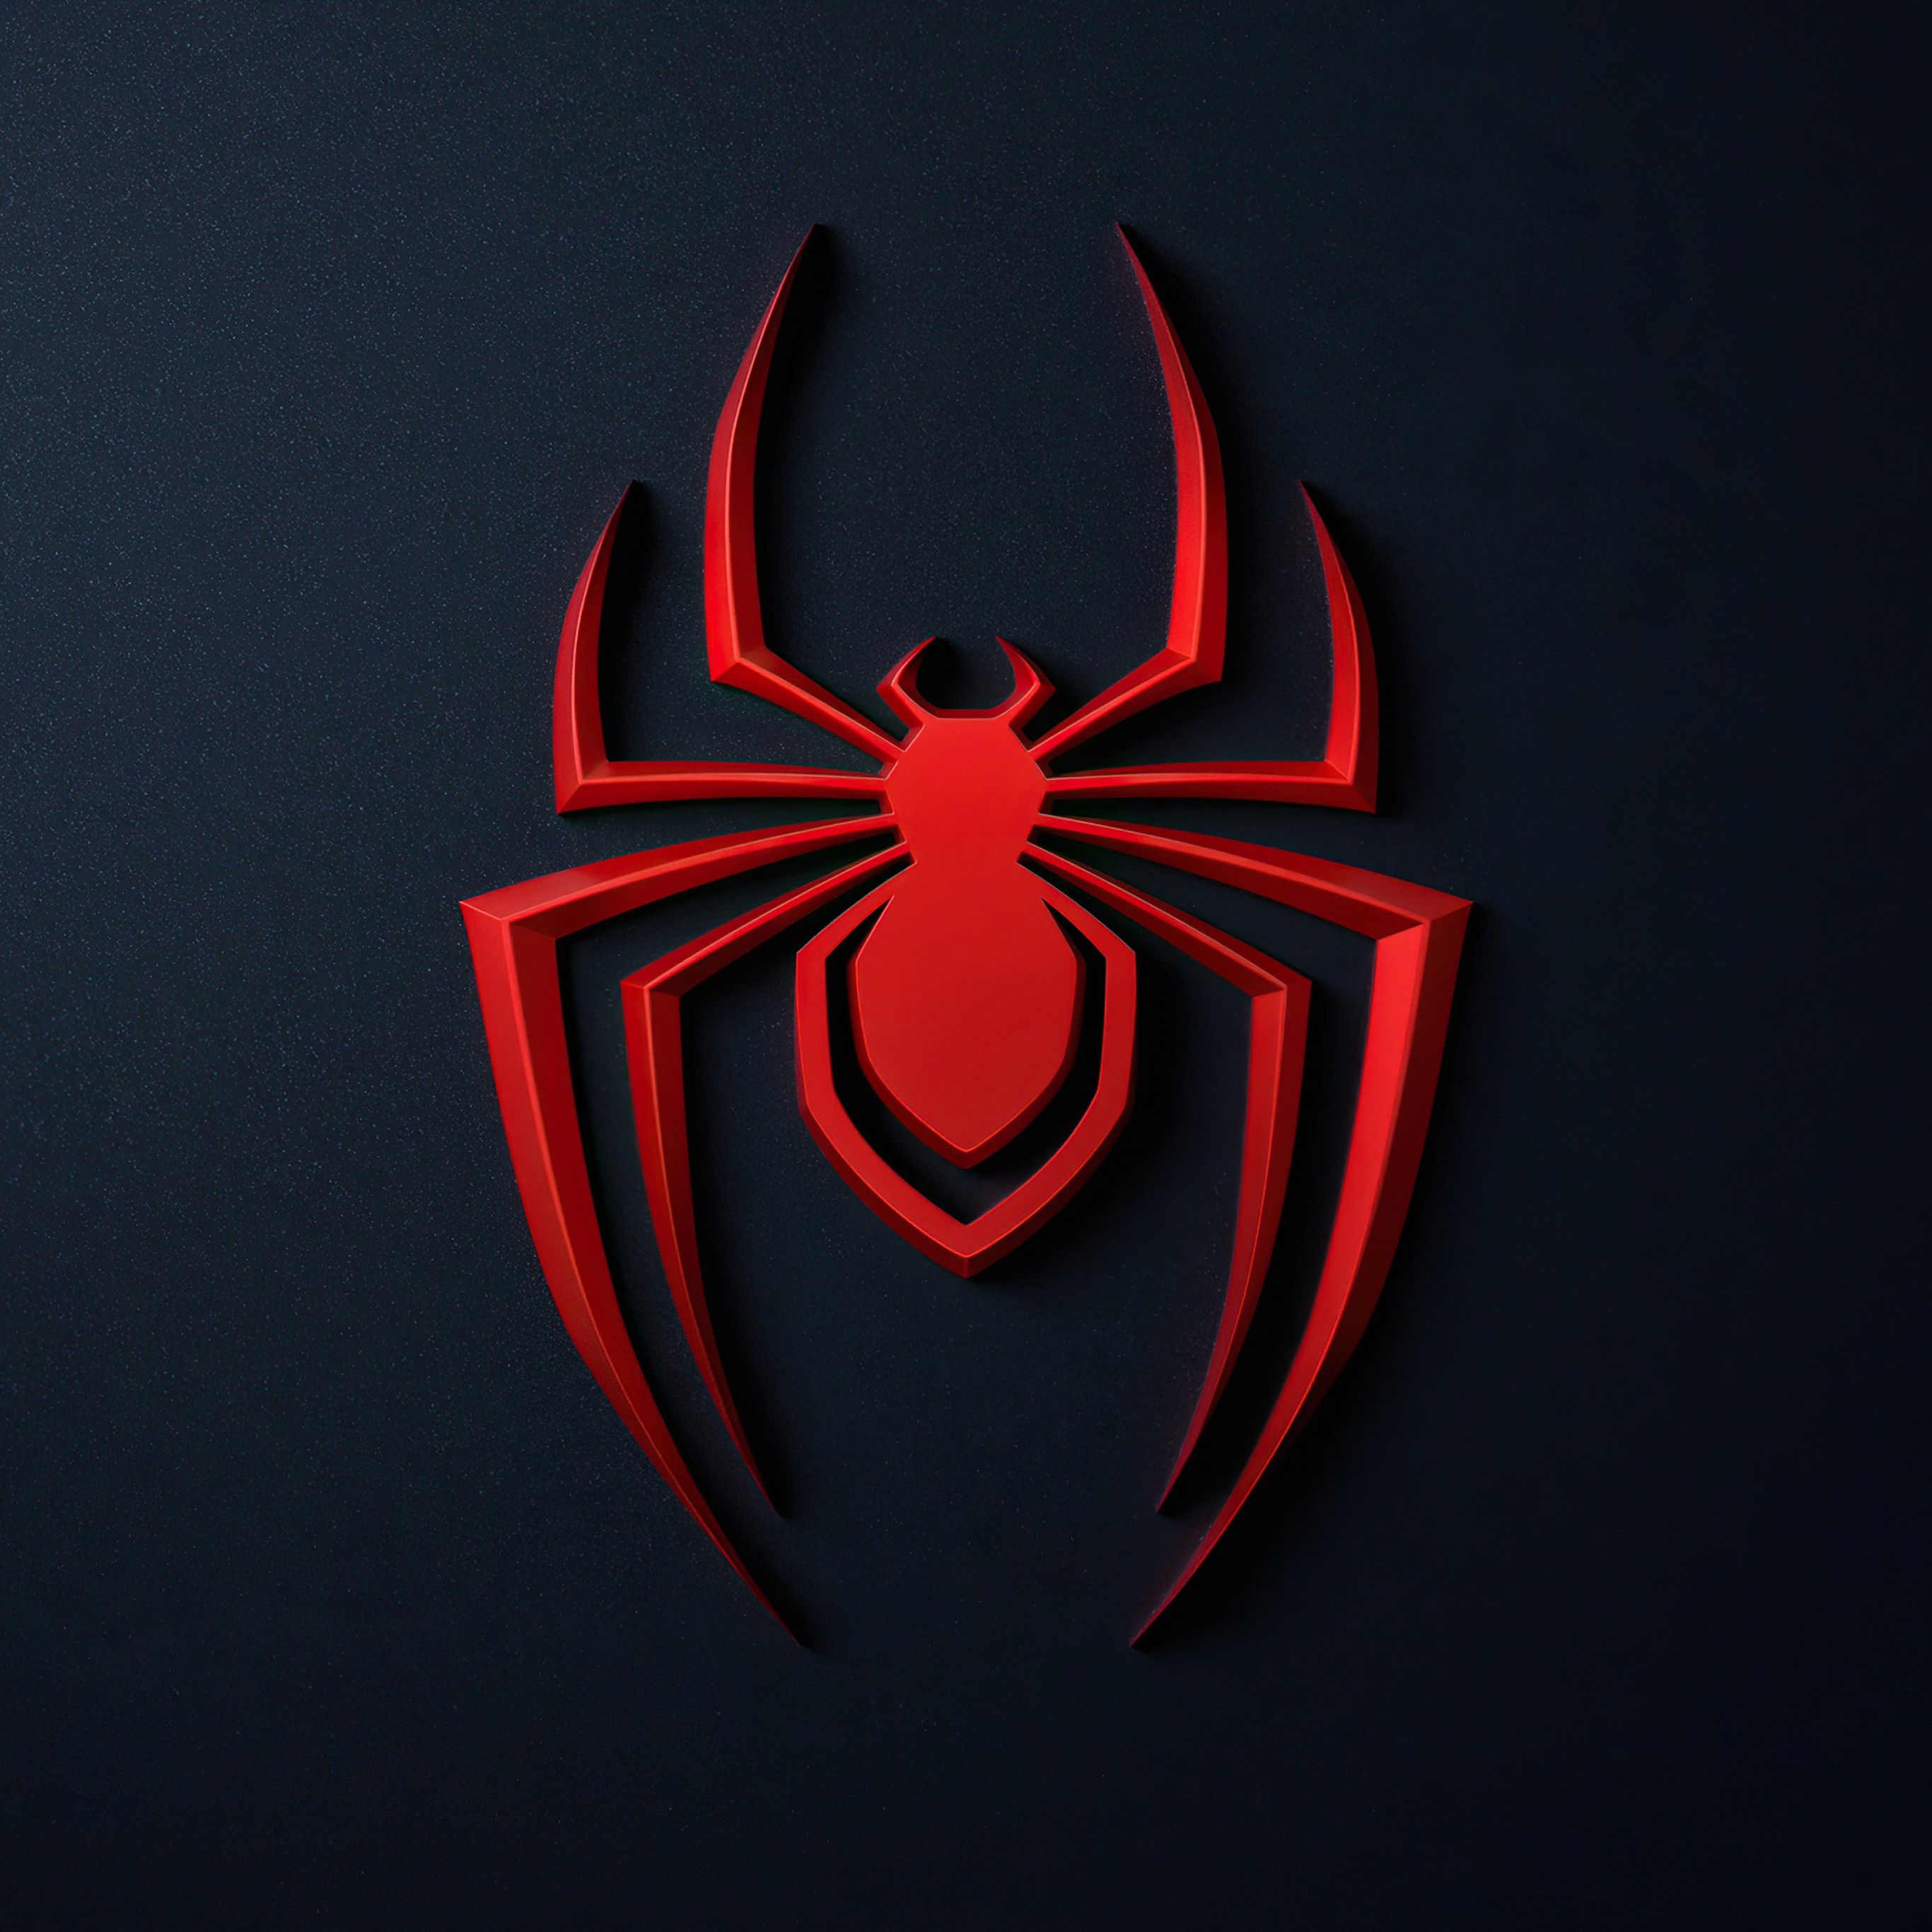 Spider Man: Miles Morales 4K Wallpaper, PlayStation 2020 Games, Black Dark